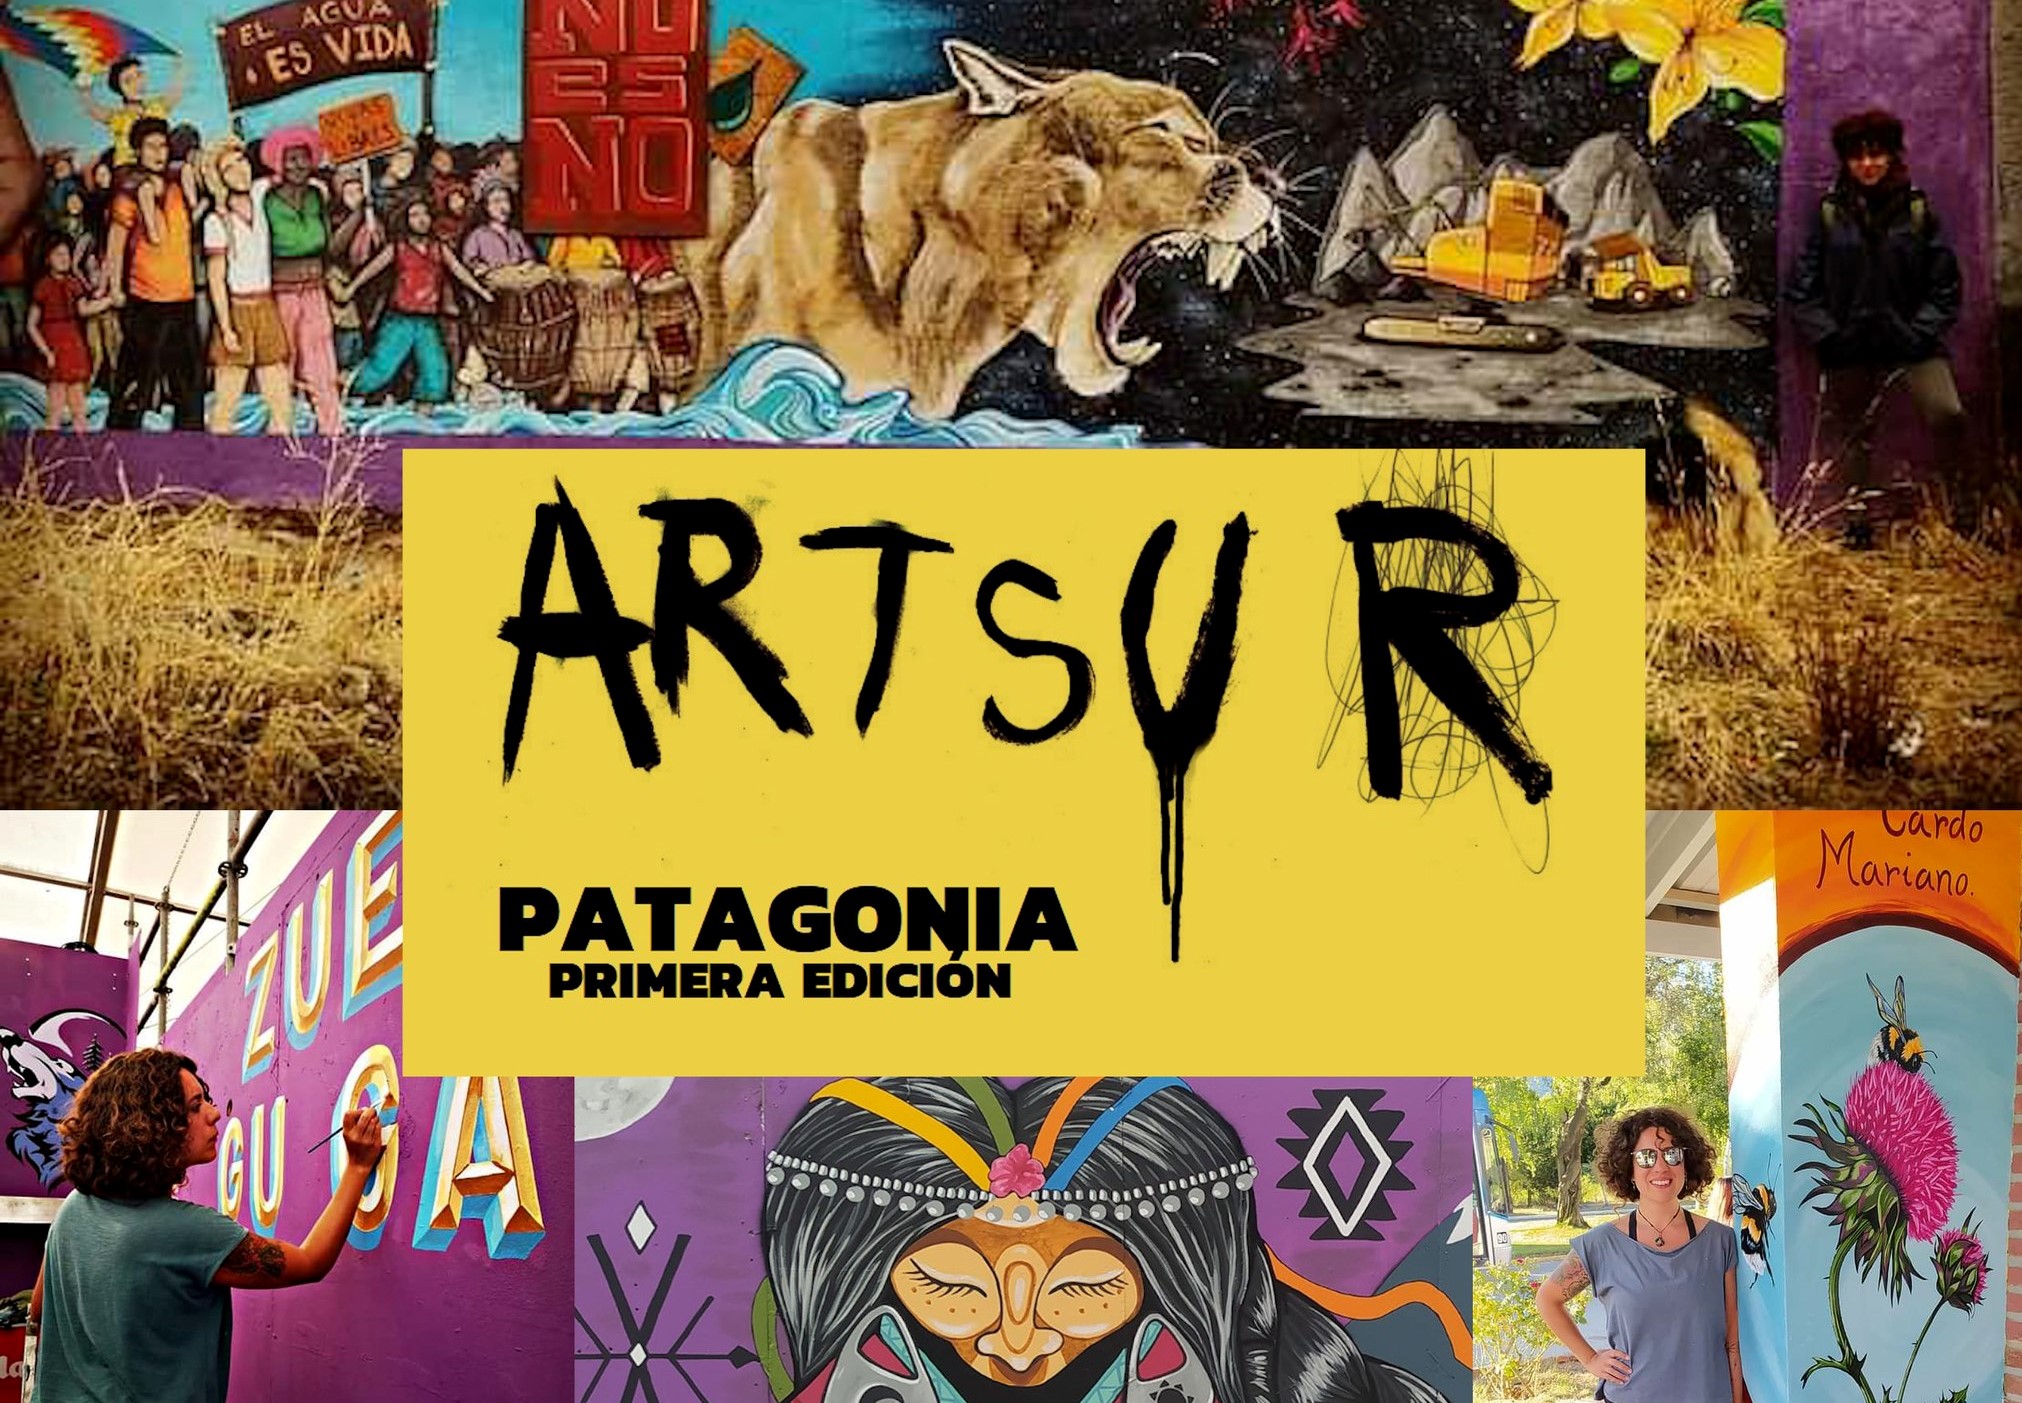 Lago Puelo: Cultura lanzó convocatoria para el Festival de Muralismo y Escultura Art Sur 24